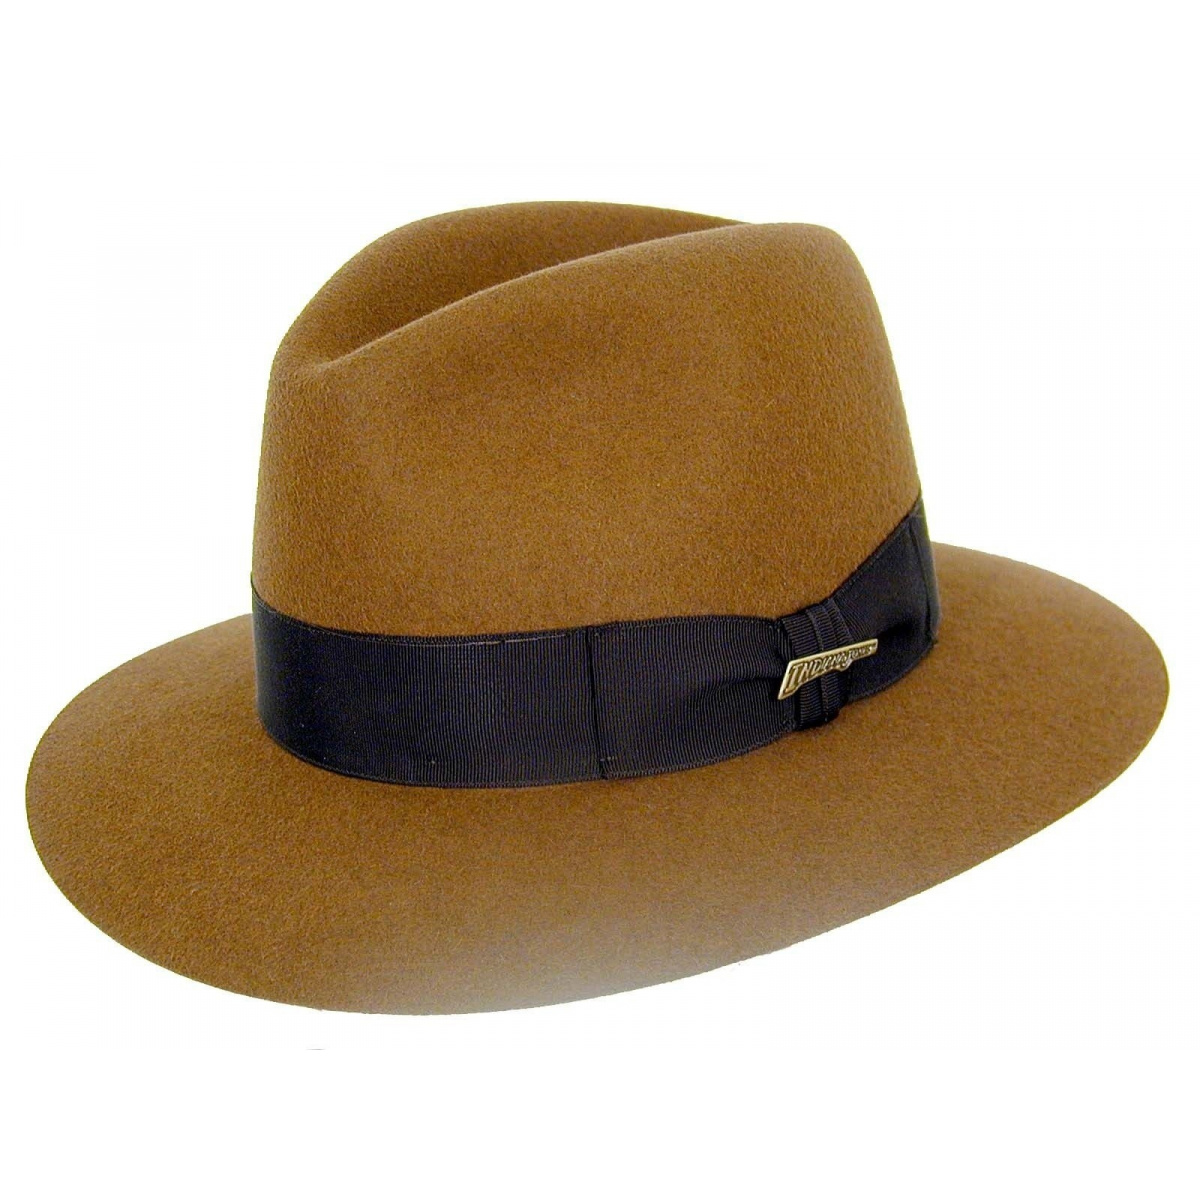 Chapeau type indiana jones - Chapeaux, casquettes, bobs, Bonnets